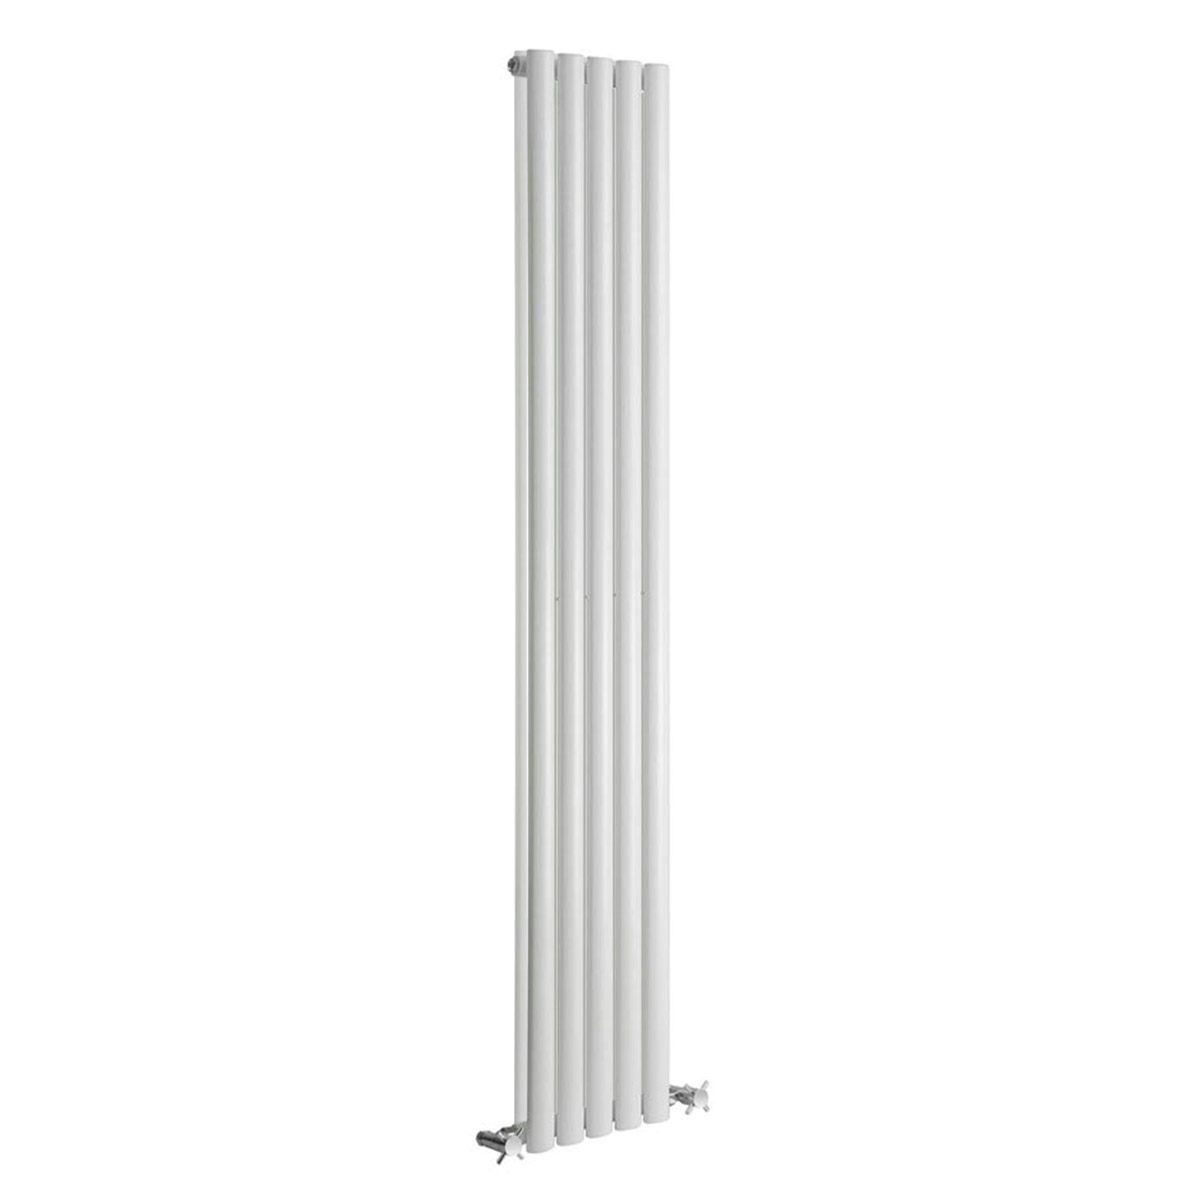 Reina Neva white double vertical steel designer radiator 1800 x 295